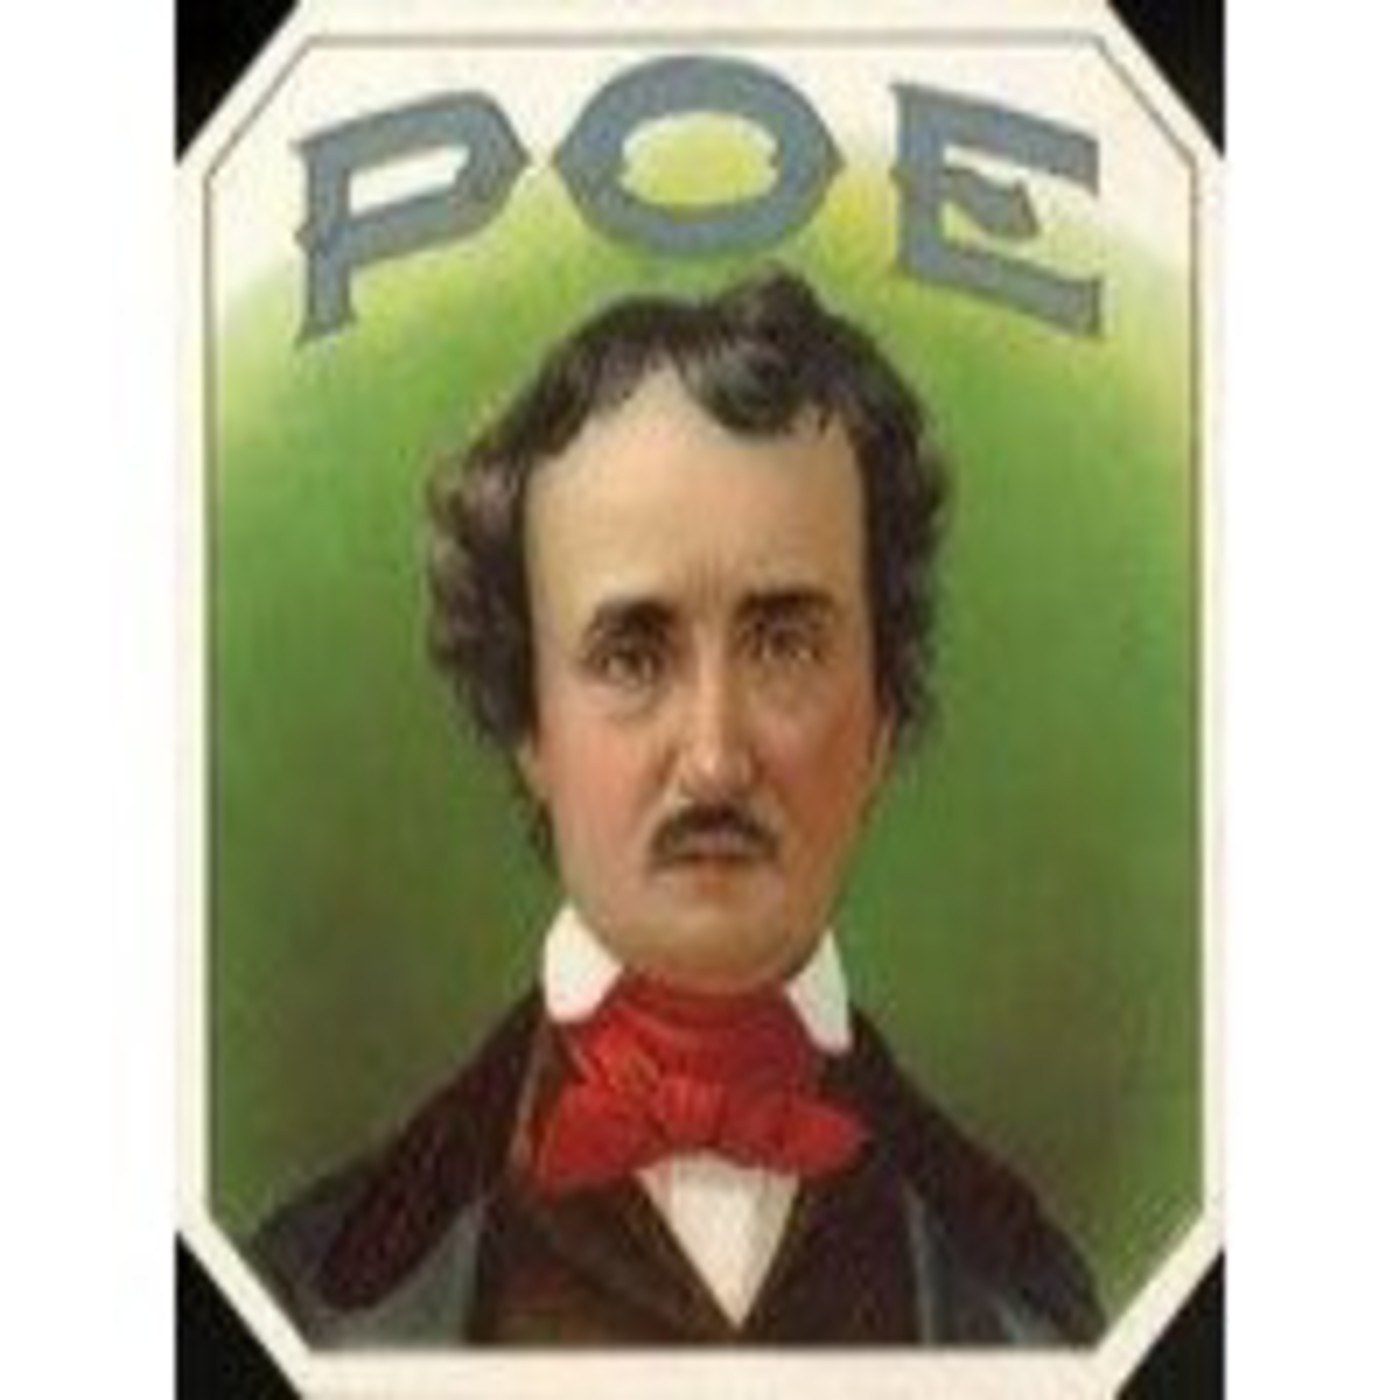 Relatos Edgar Allan Poe 2 Voz Humana